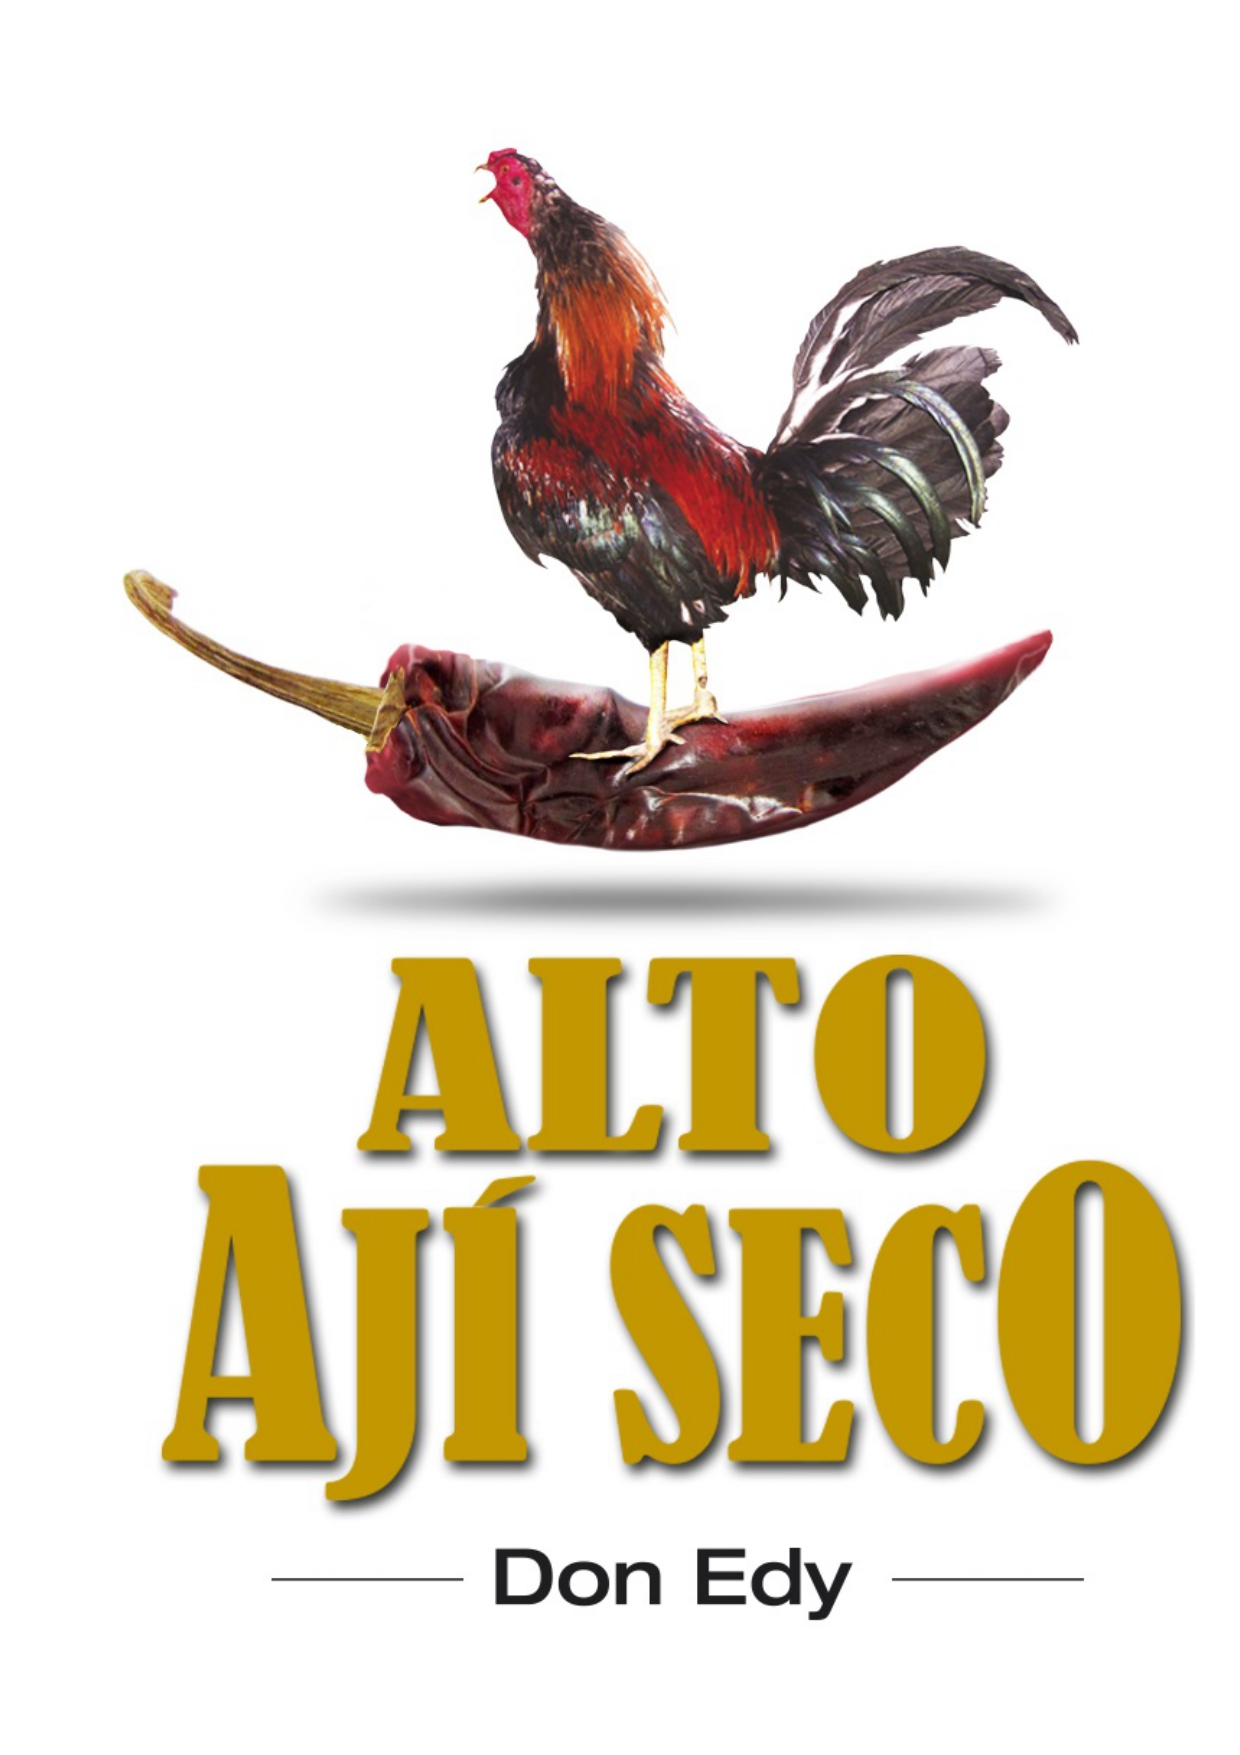 El Ají Seco